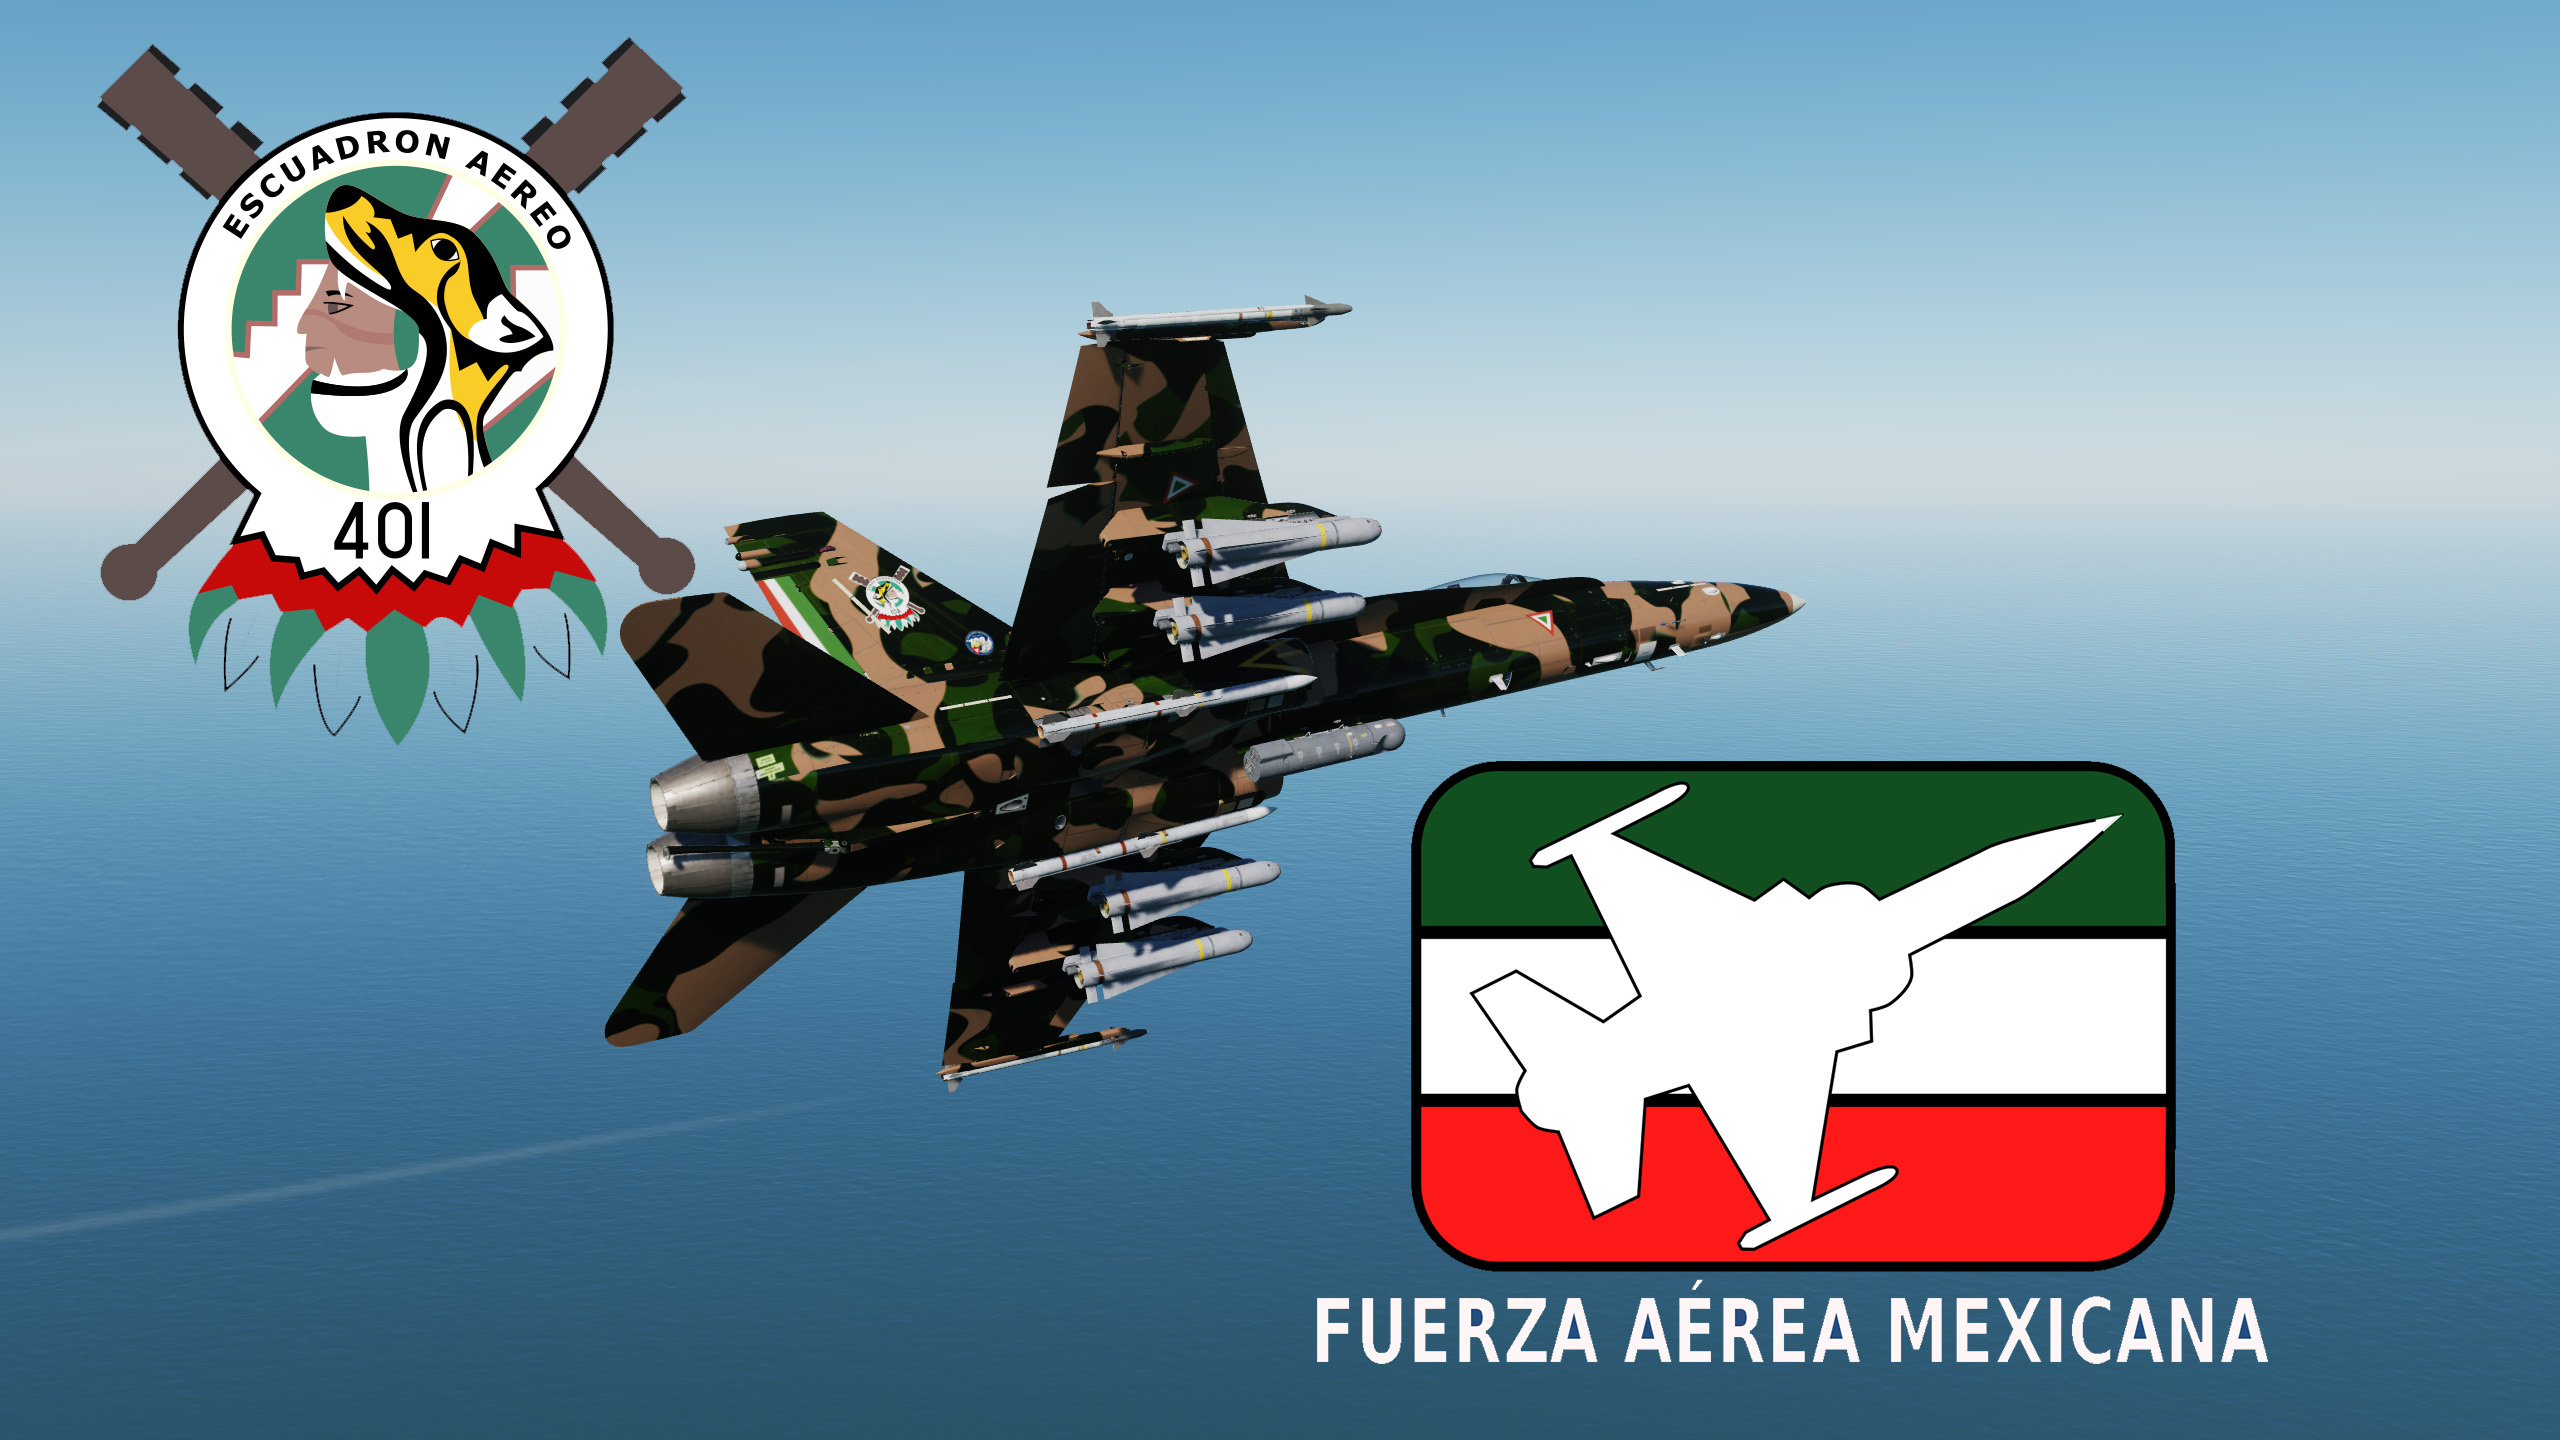 F-18 Fuerza aerea Mexicana (FAM)